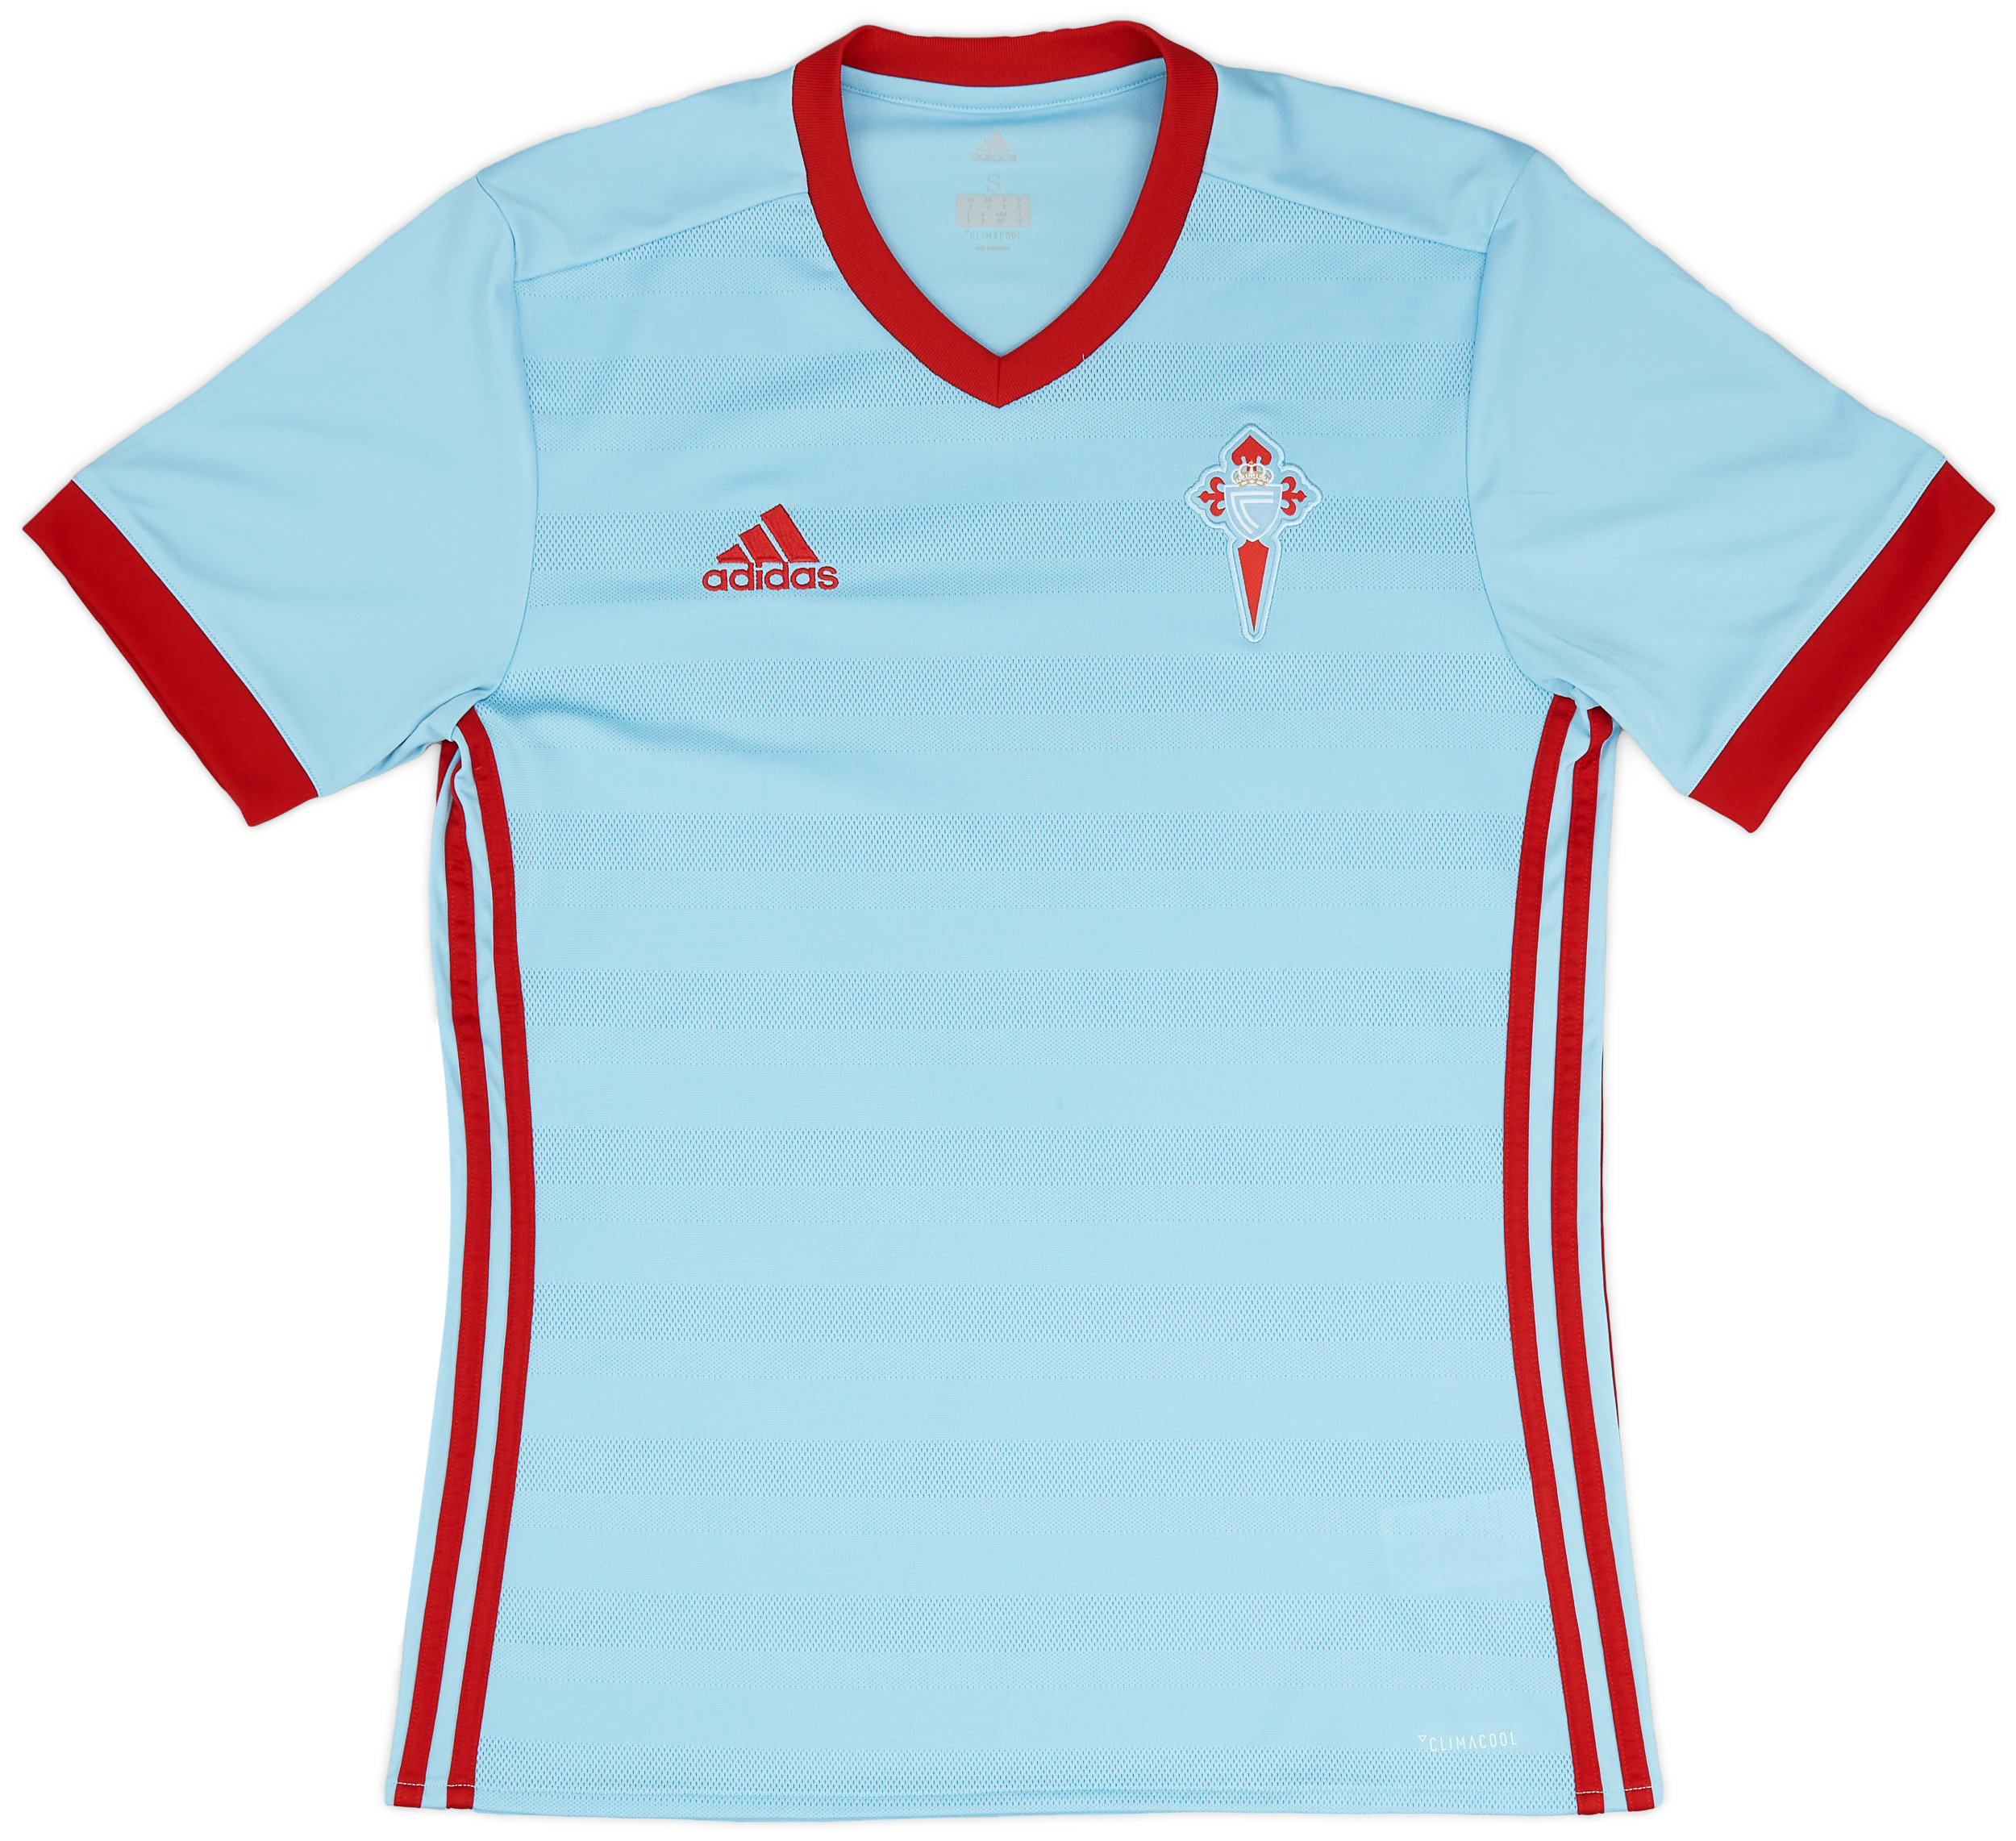 Celta Vigo  home shirt  (Original)